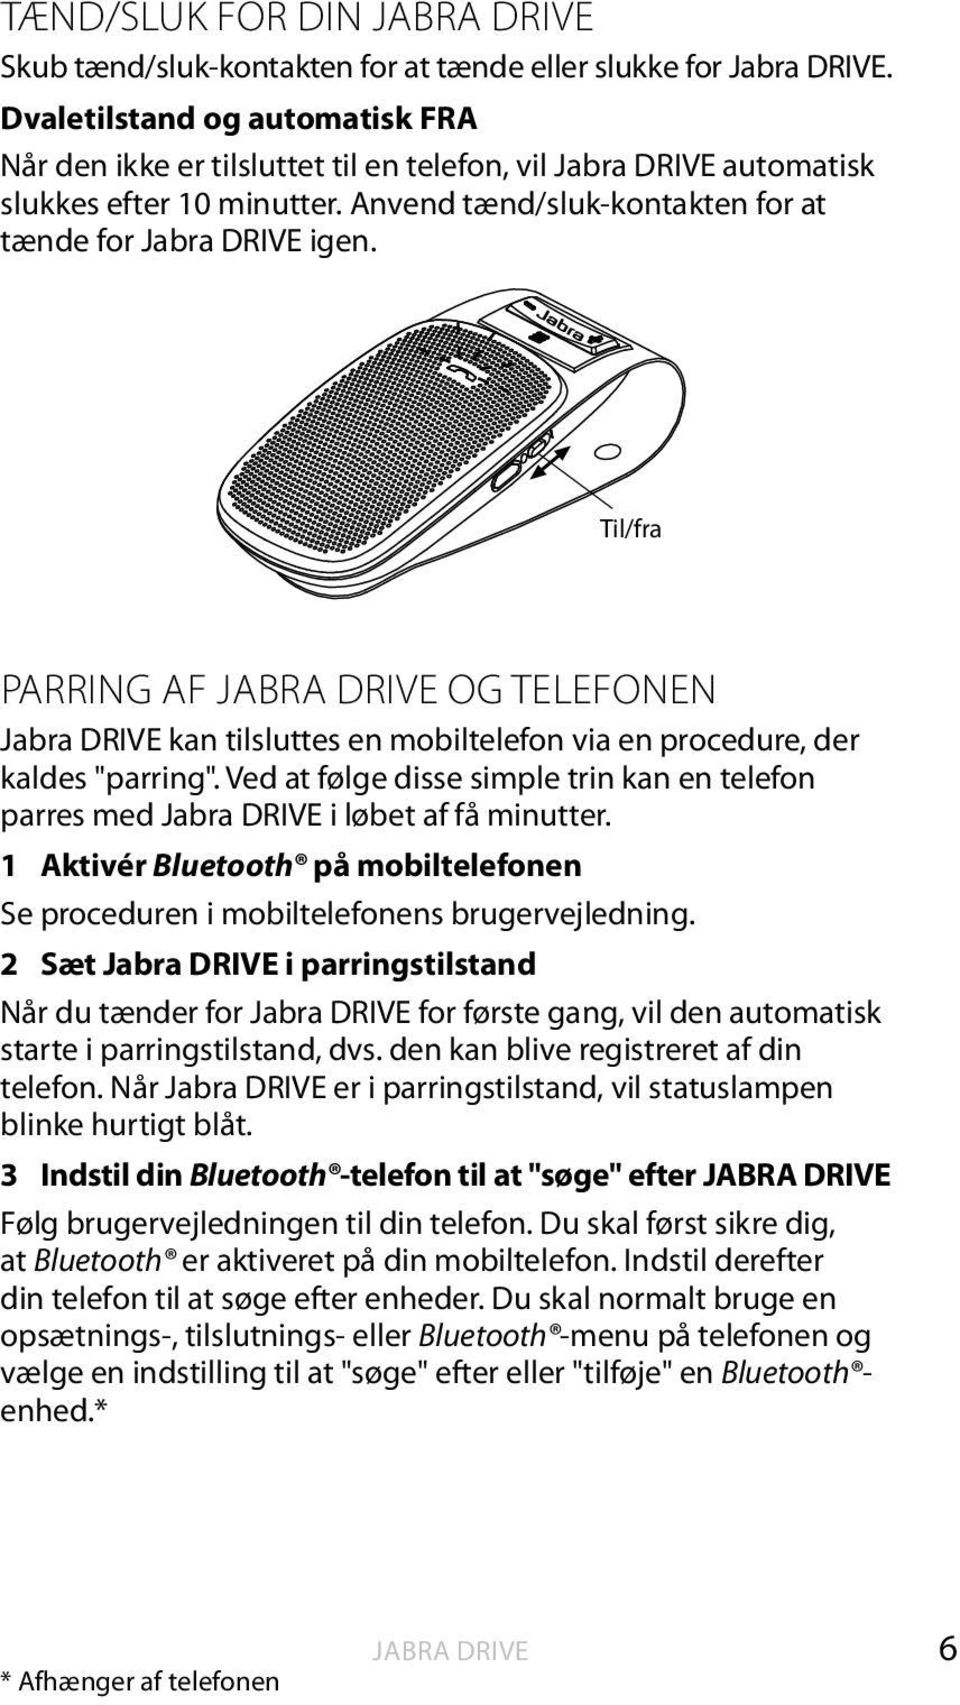 Til/fra PARRING AF JABRA DRIVE OG TELEFONEN kan tilsluttes en mobiltelefon via en procedure, der kaldes "parring". Ved at følge disse simple trin kan en telefon parres med i løbet af få minutter.